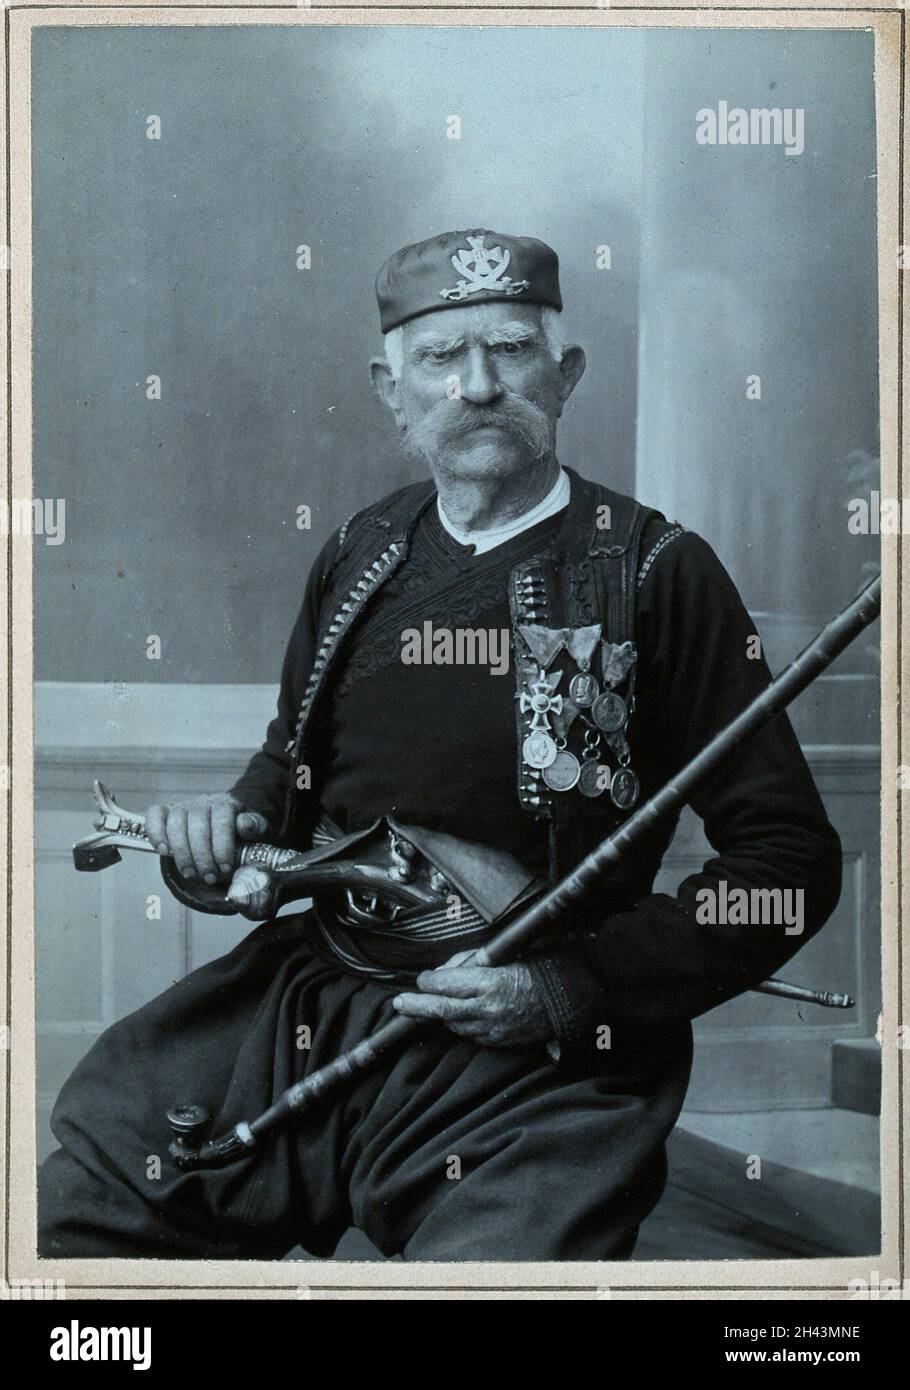 Un homme serbe âgé, portant une robe nationale avec de nombreuses médailles, avec un pistolet dans sa ceinture et tenant une pipe à tabac.Photographie de D. Djordjevic, premier quart du XXe siècle. Banque D'Images